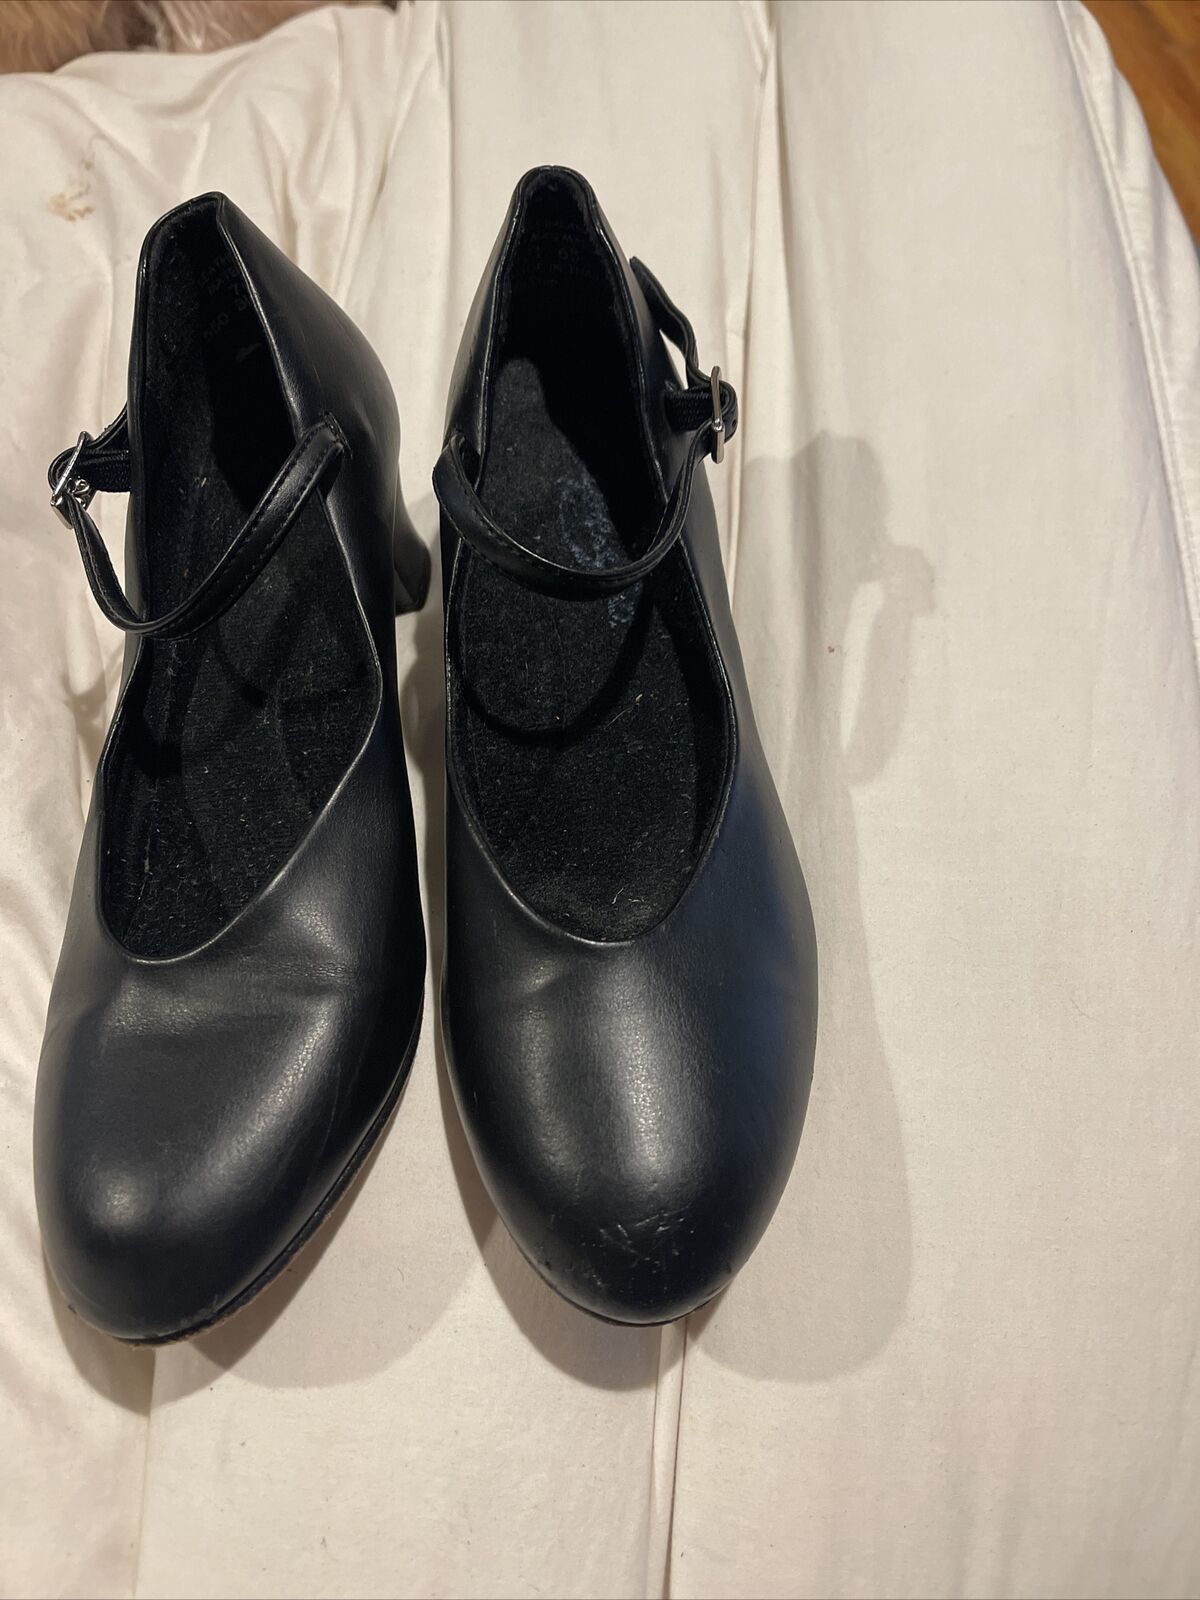 Capezio Dance Black Character Dance Shoes Style # 550 Womens Sz 7 Med